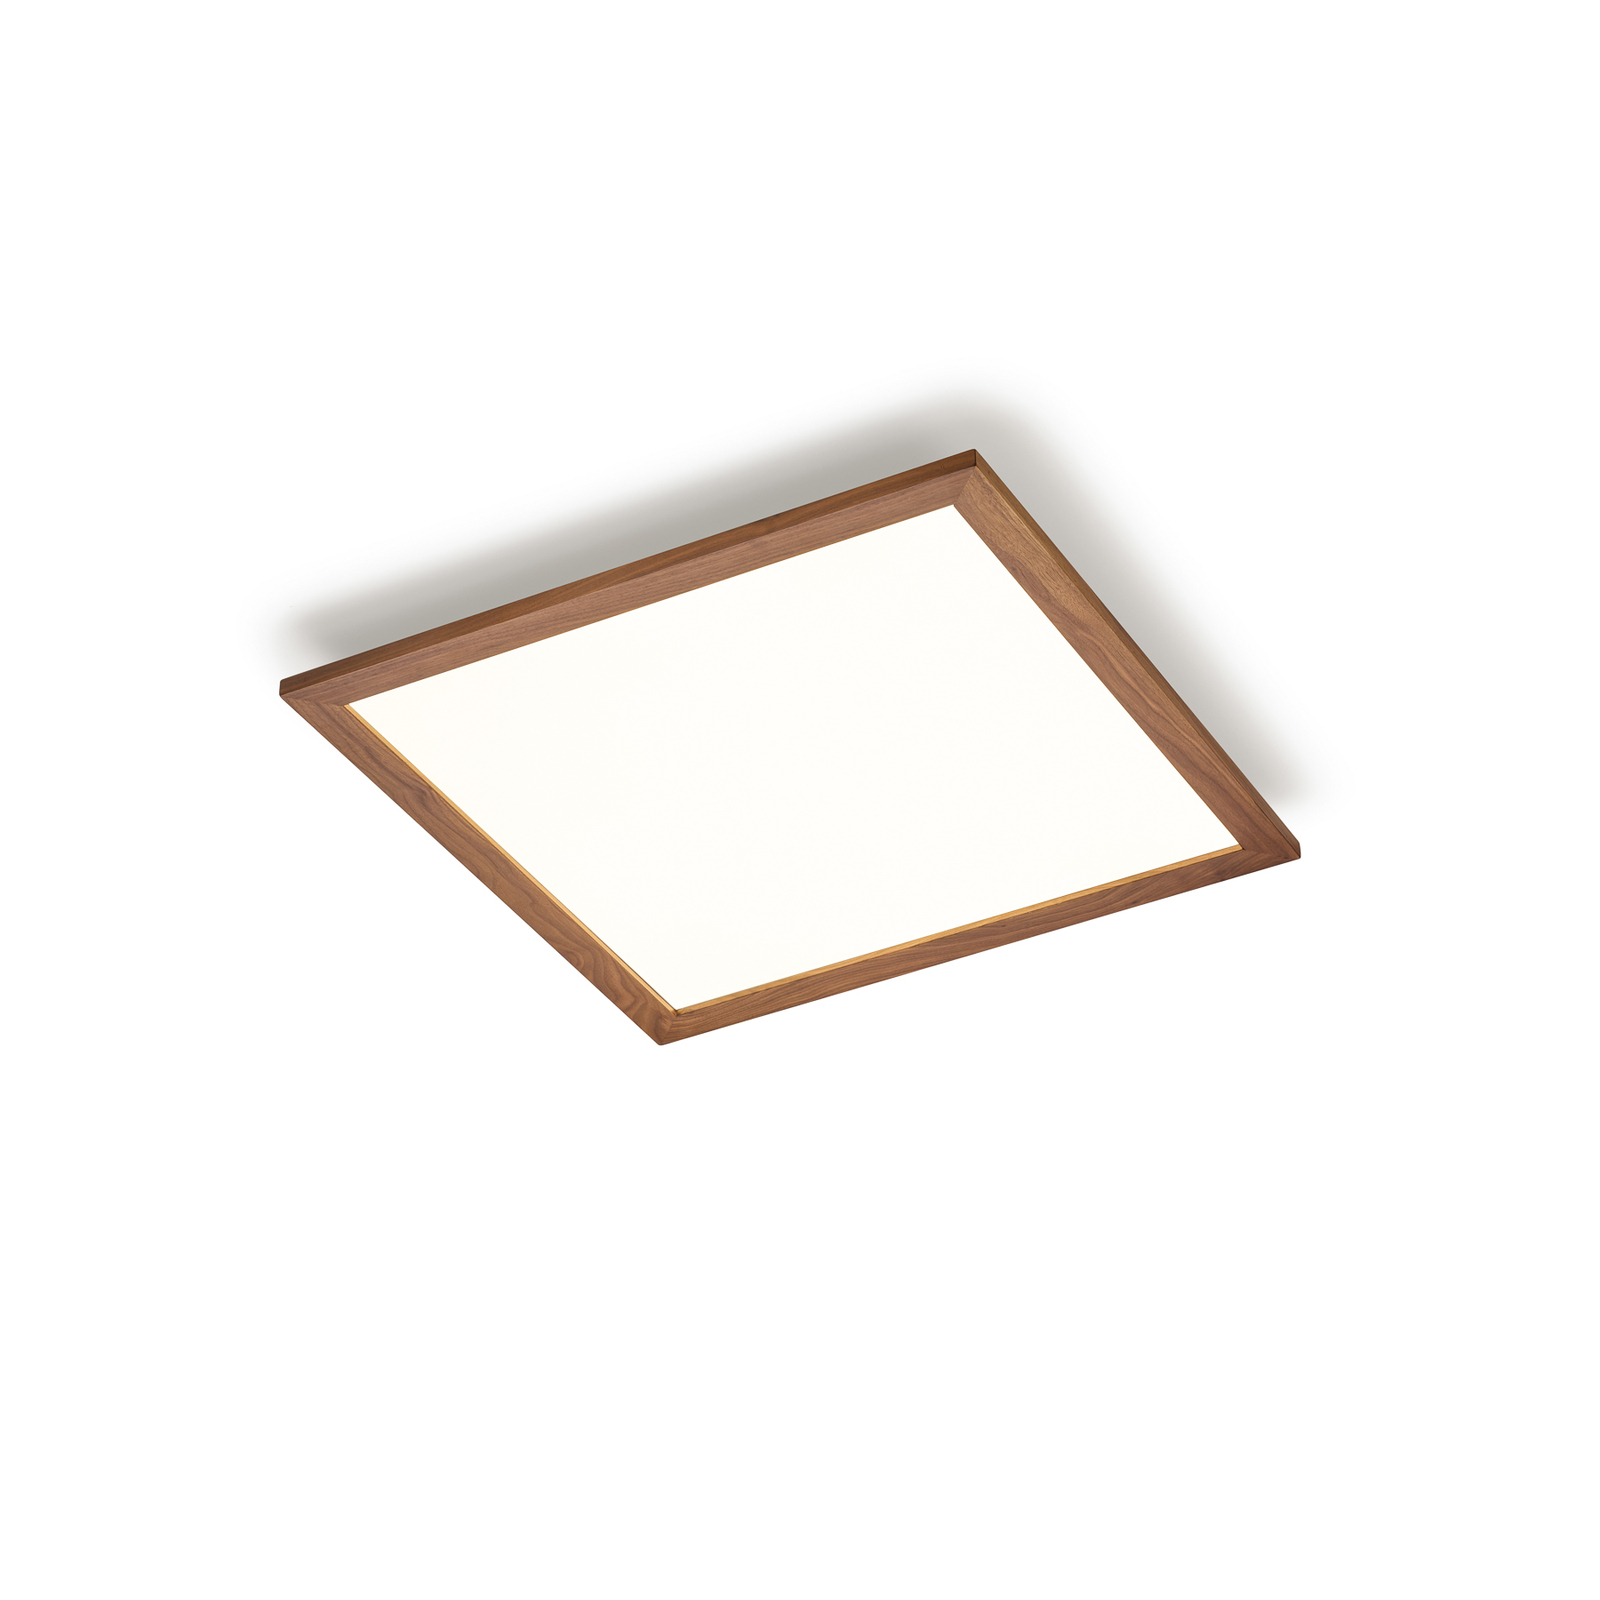 Quitani Aurinor LED-panel, valnöt, 68 cm